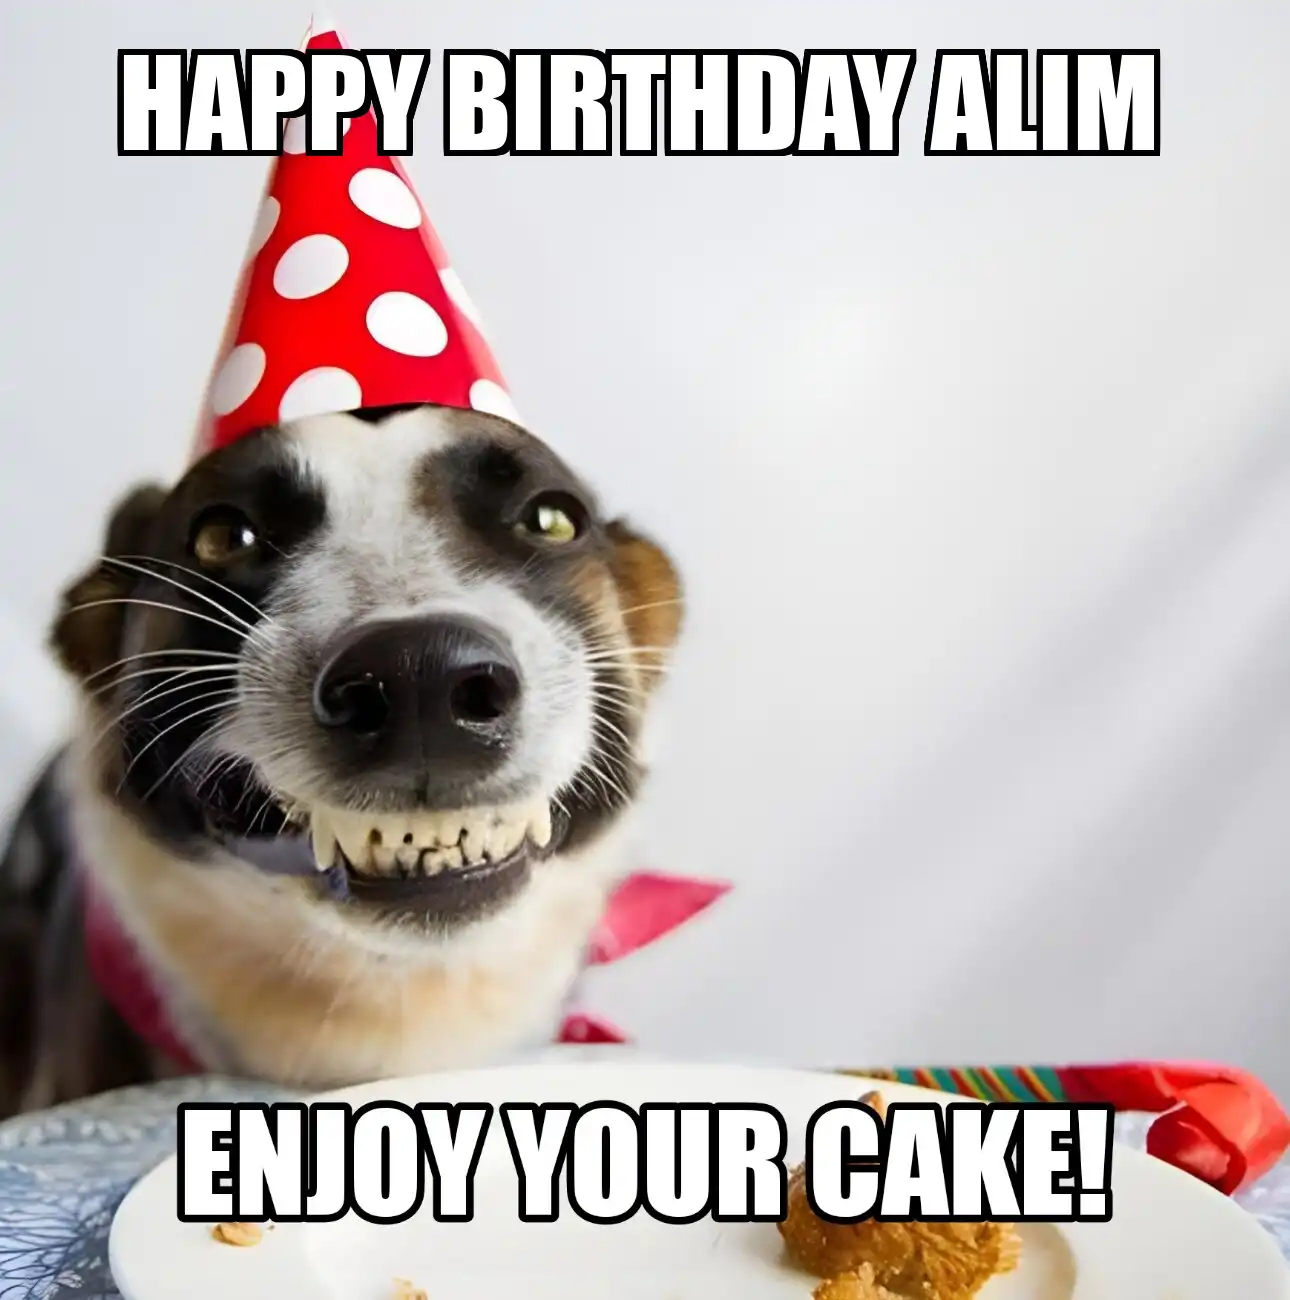 Happy Birthday Alim Enjoy Your Cake Dog Meme